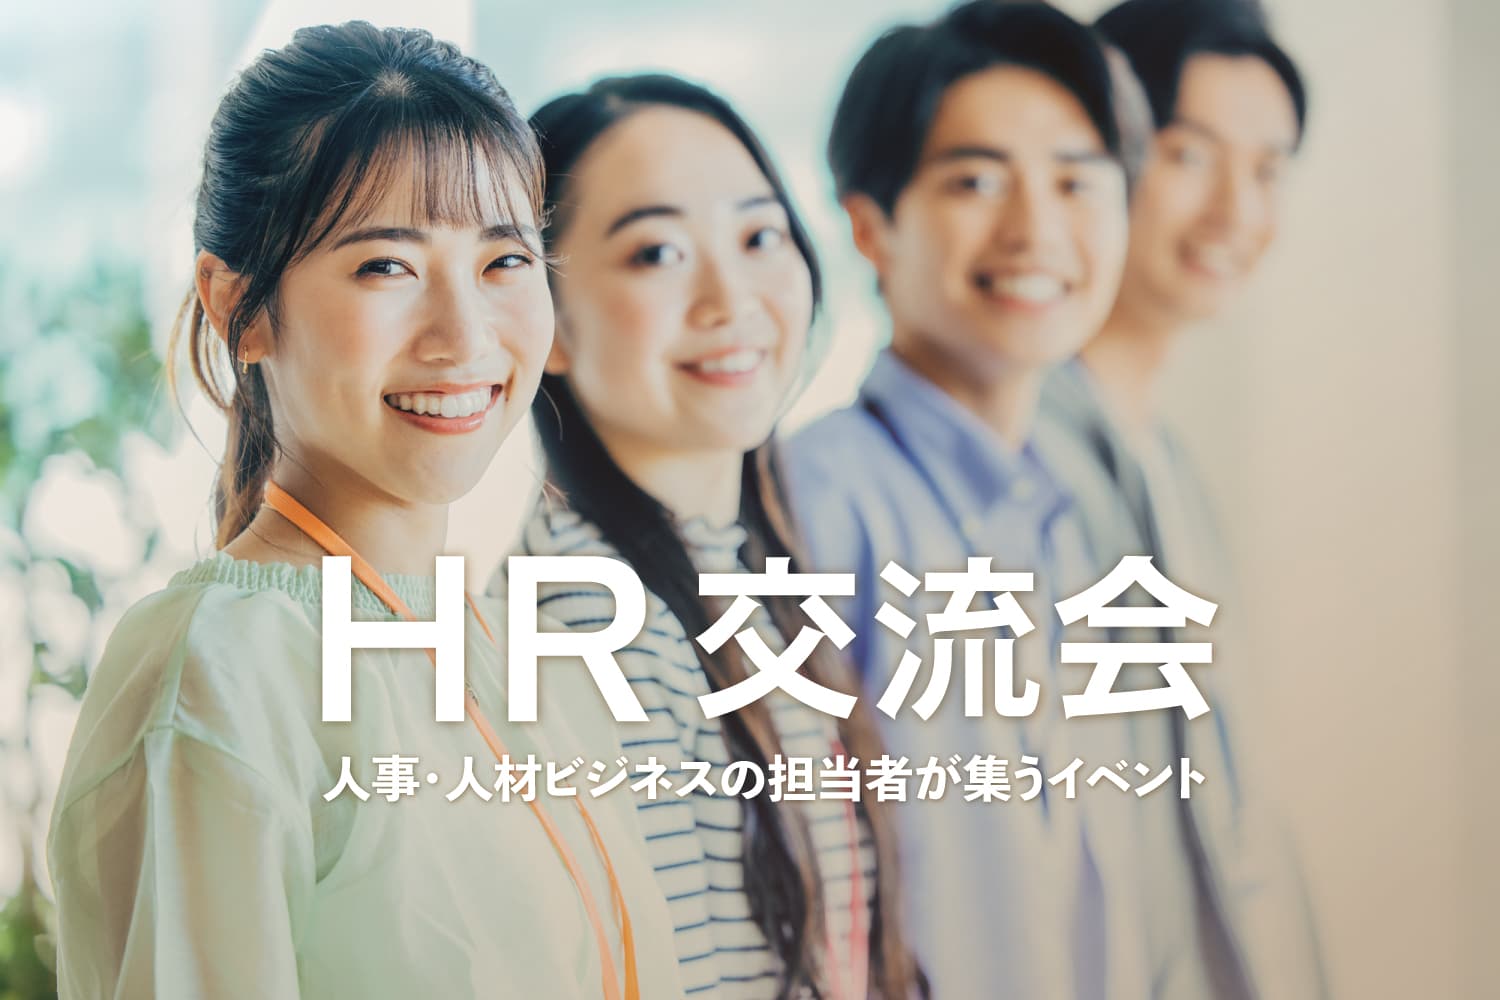 HR交流会 - 人事・採用担当者の交流イベント